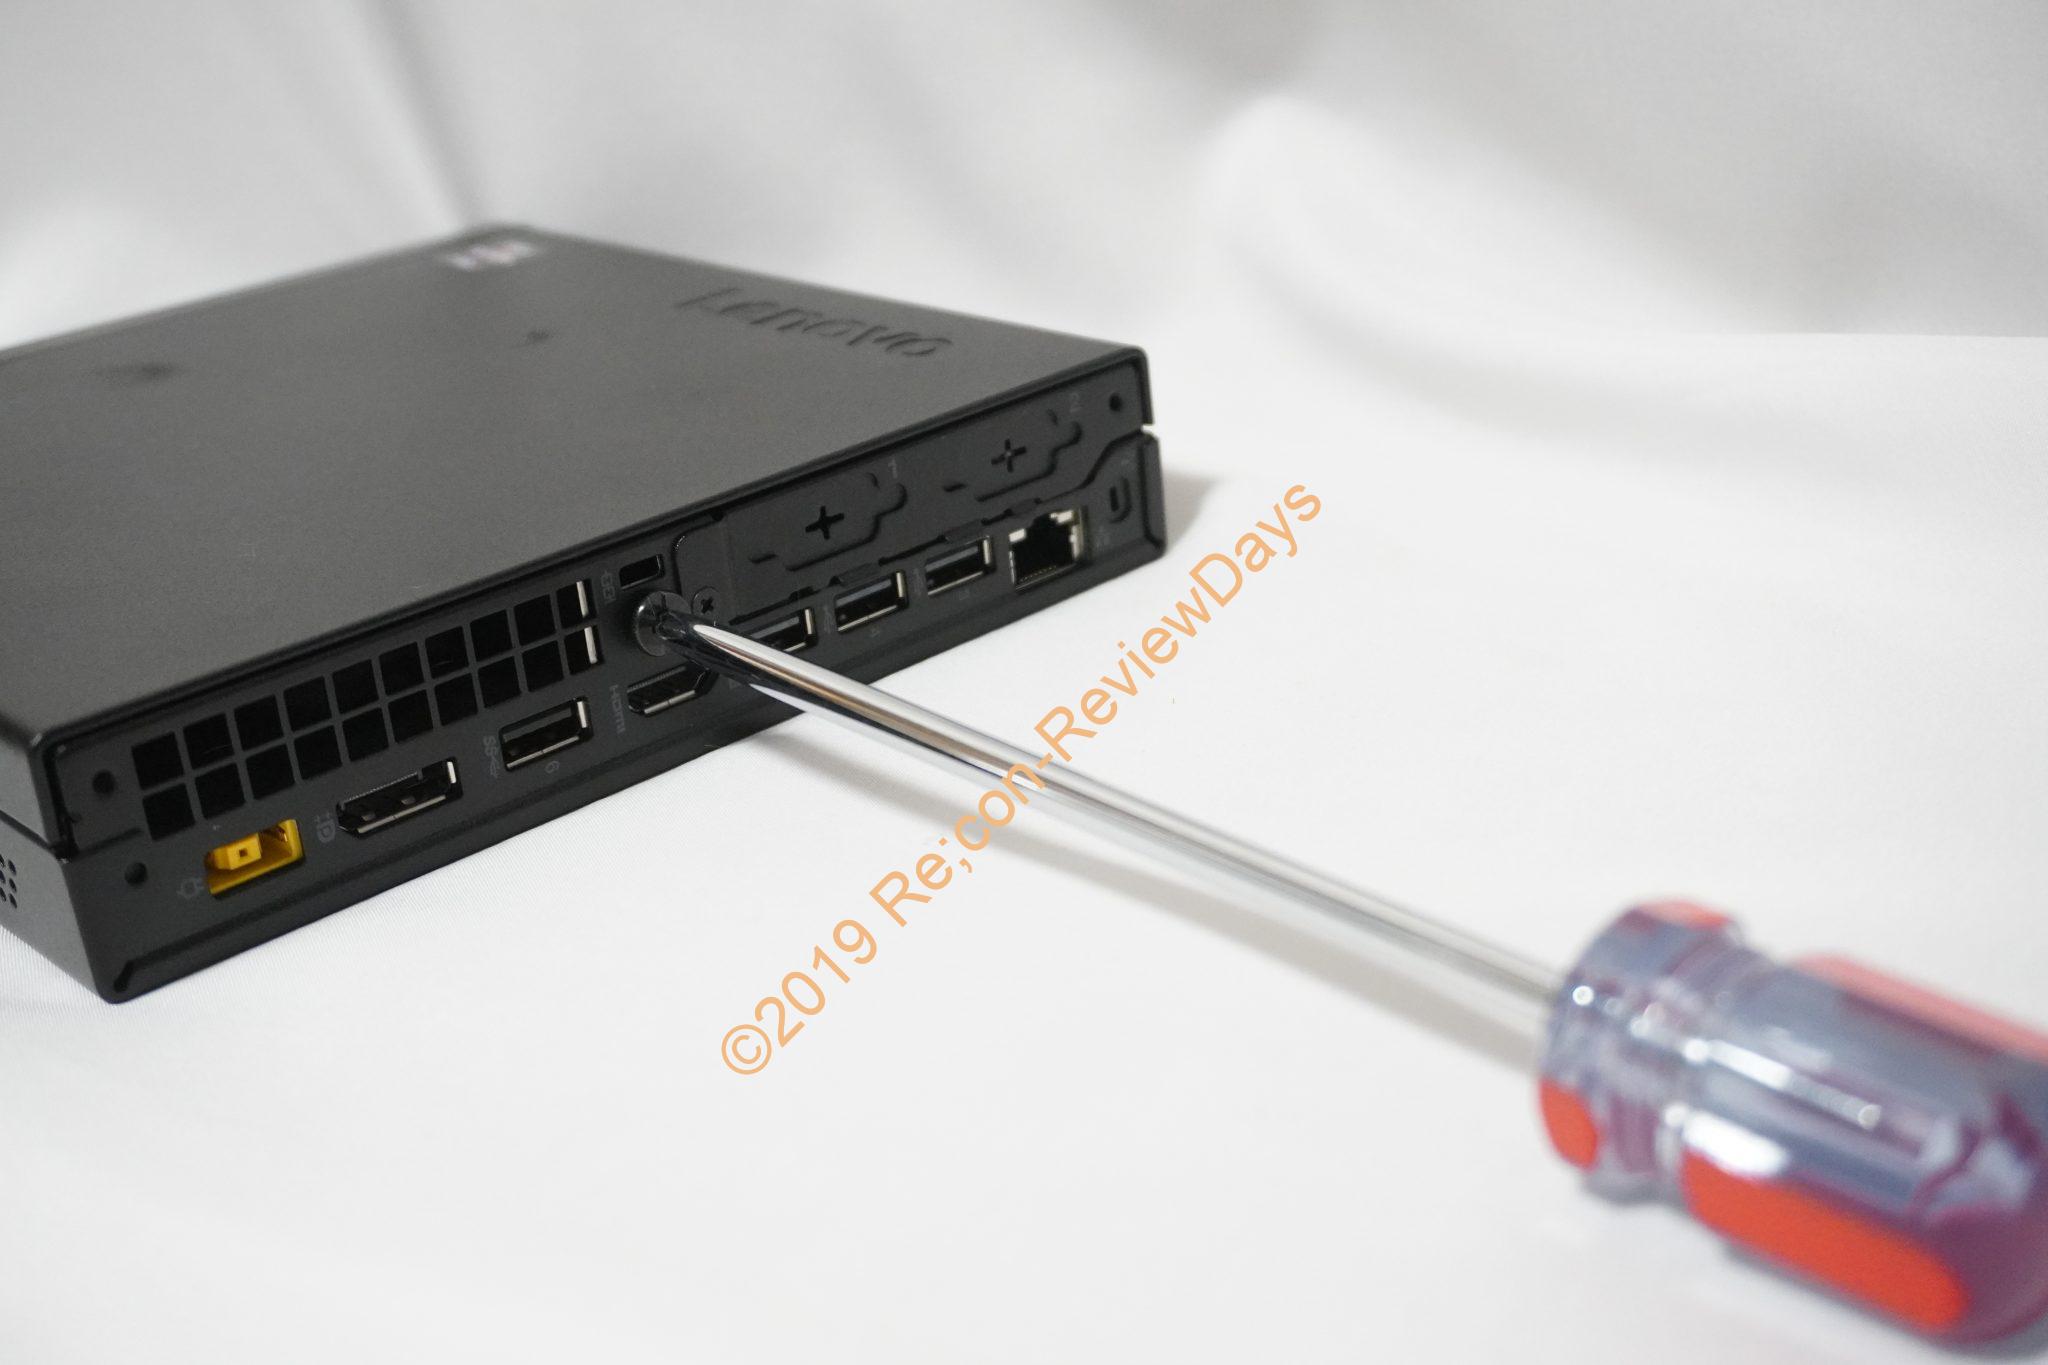 約3 21万円で購入可能なlenovo製の超小型pc Thinkcentre M75q 1 Tiny の詳細をチェックする Lenovo Thinkcentre M75q1tiny Nuc Ryzen Amd Recon Reviewdays